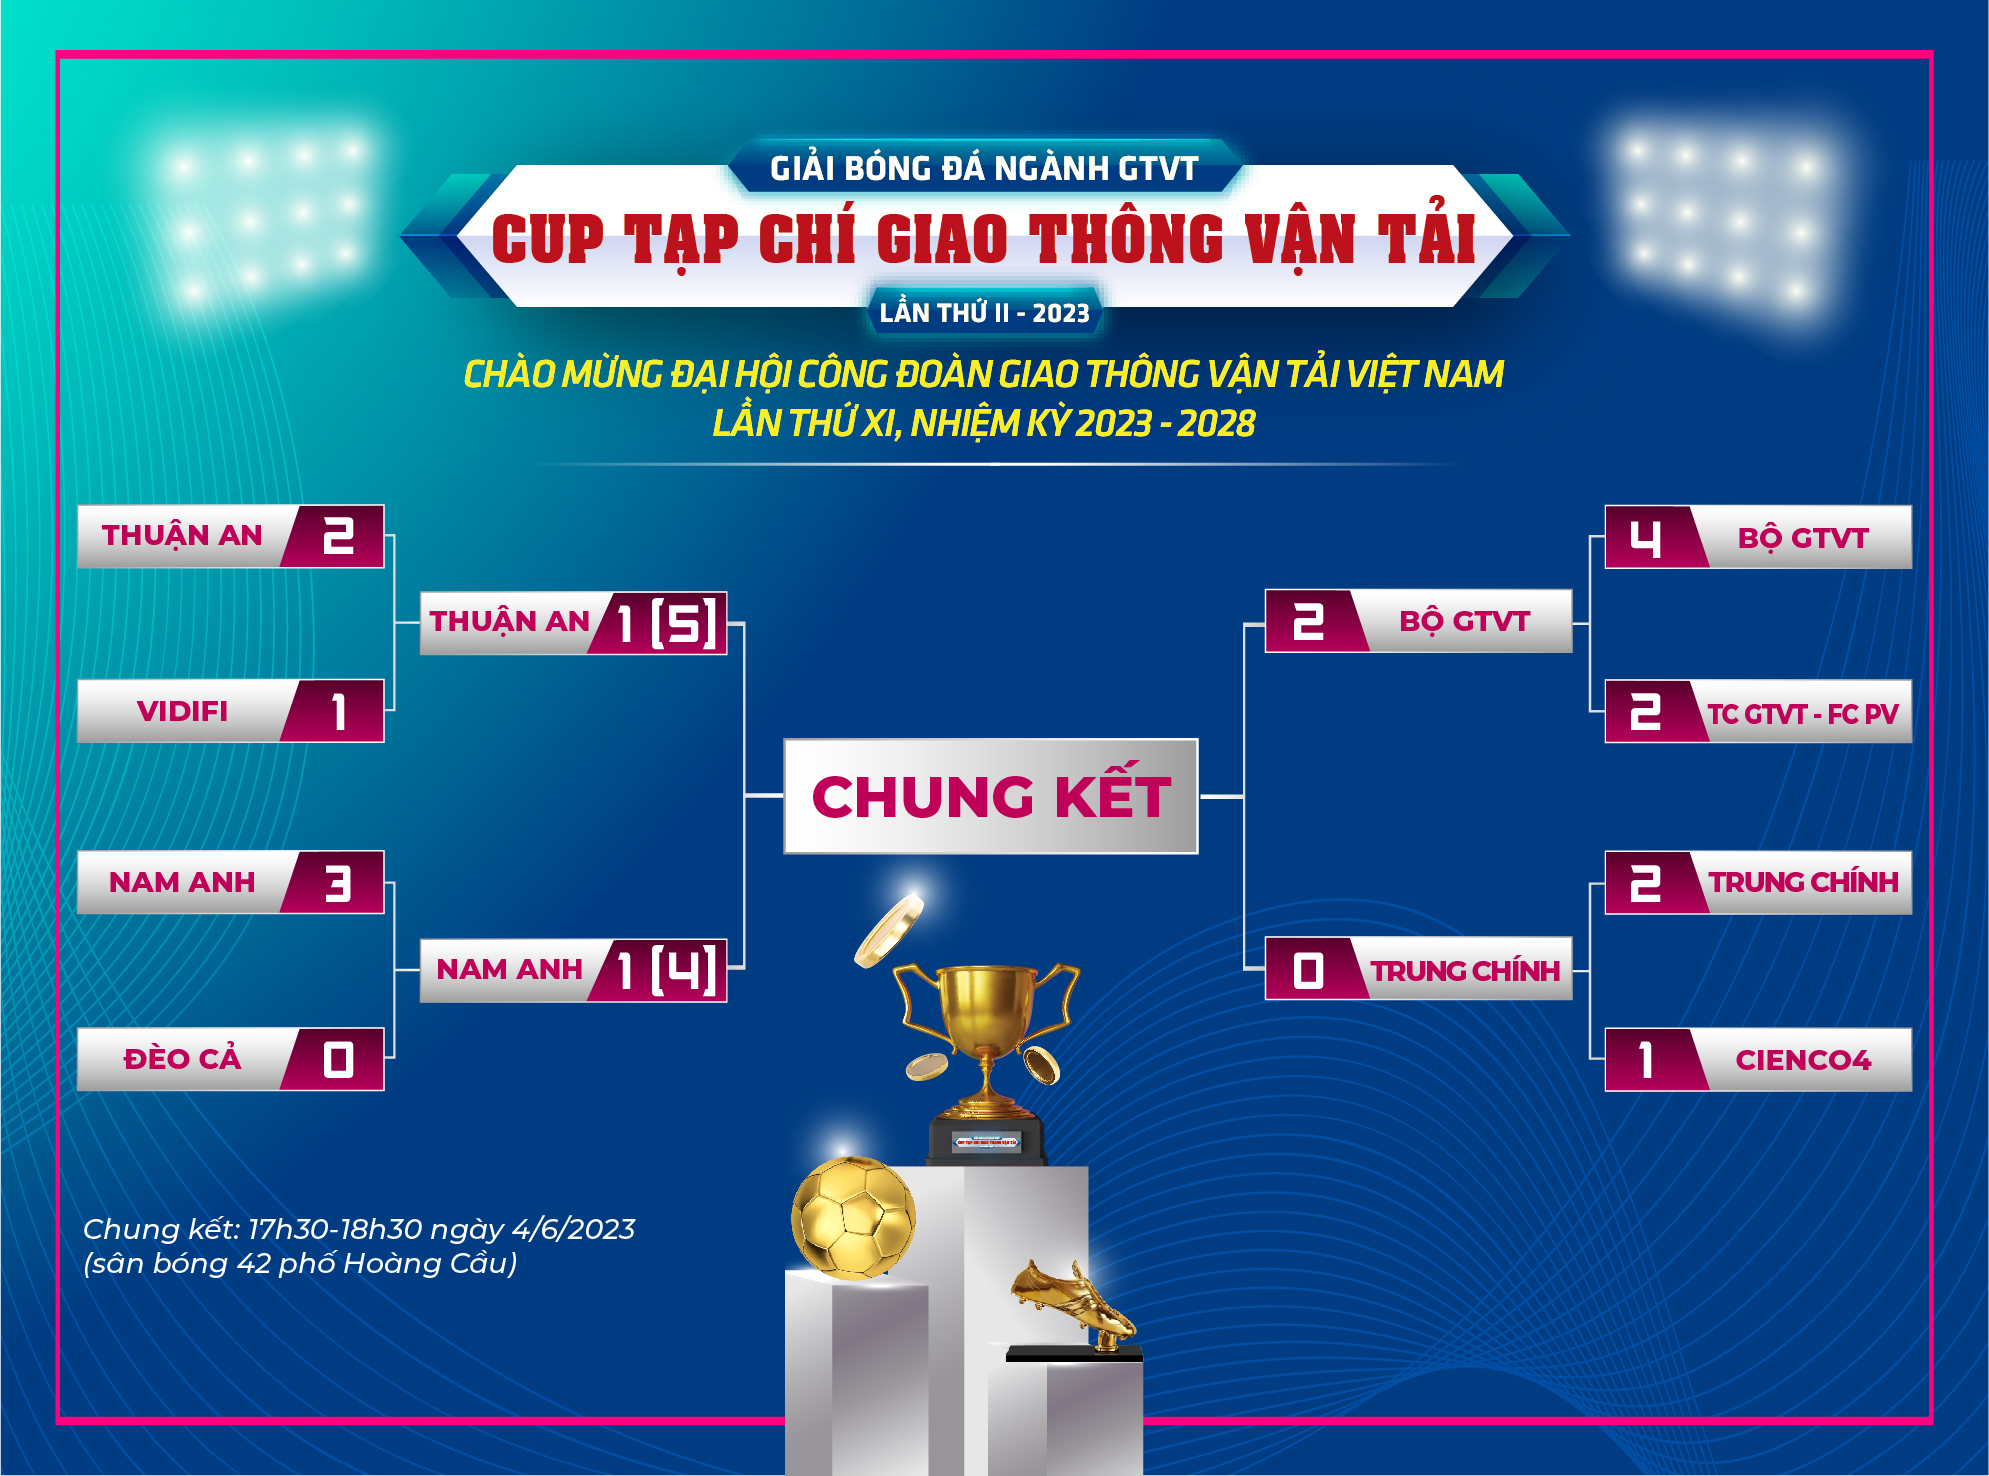 Bộ GTVT gặp Tập đoàn Thuận An trong trận Chung kết Giải bóng đá ngành GTVT tranh Cup Tạp chí GTVT - Ảnh 4.